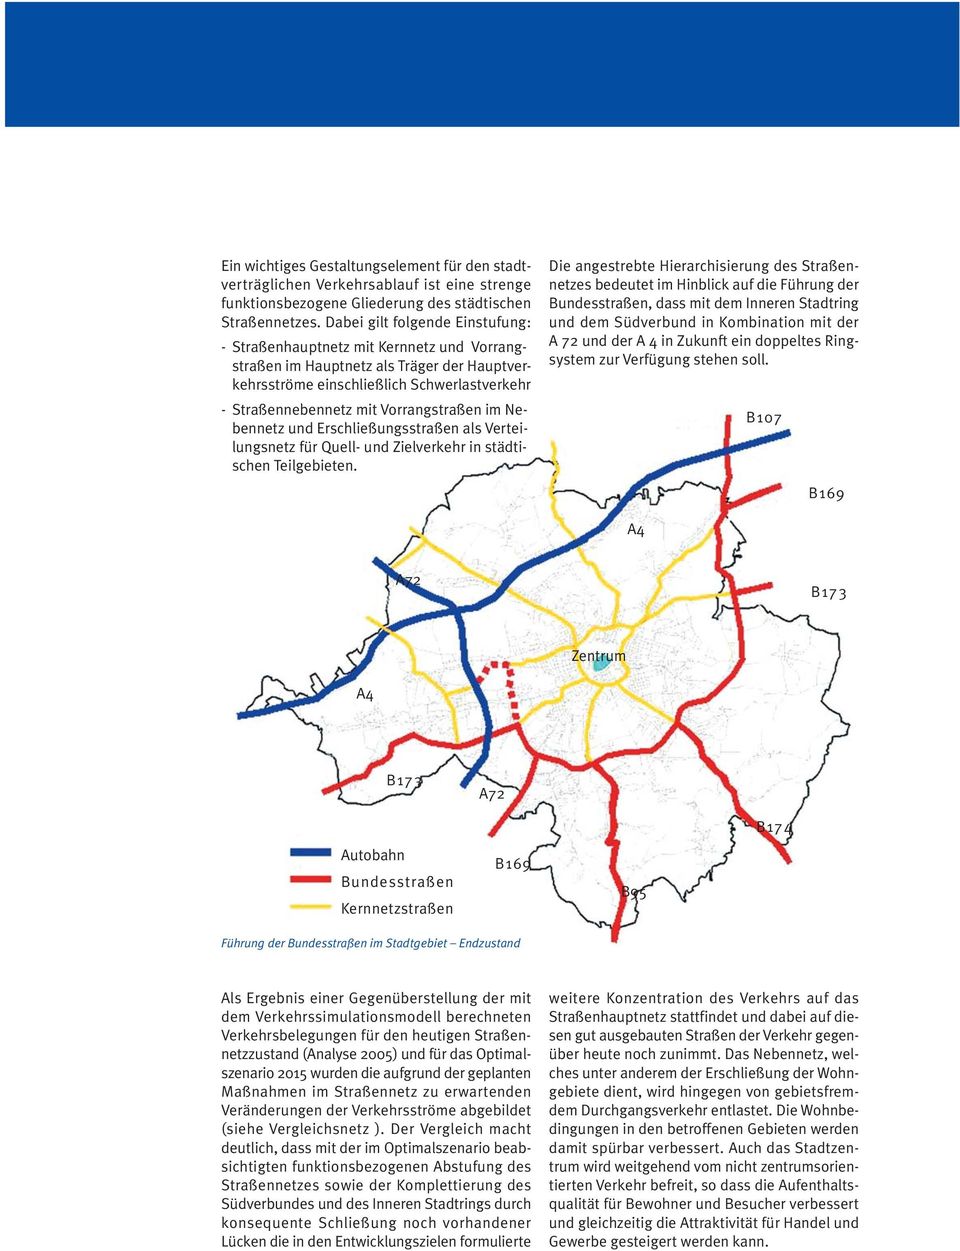 Vorrangstraßen im Nebennetz und Erschließungsstraßen als Verteilungsnetz für Quell- und Zielverkehr in städtischen Teilgebieten.